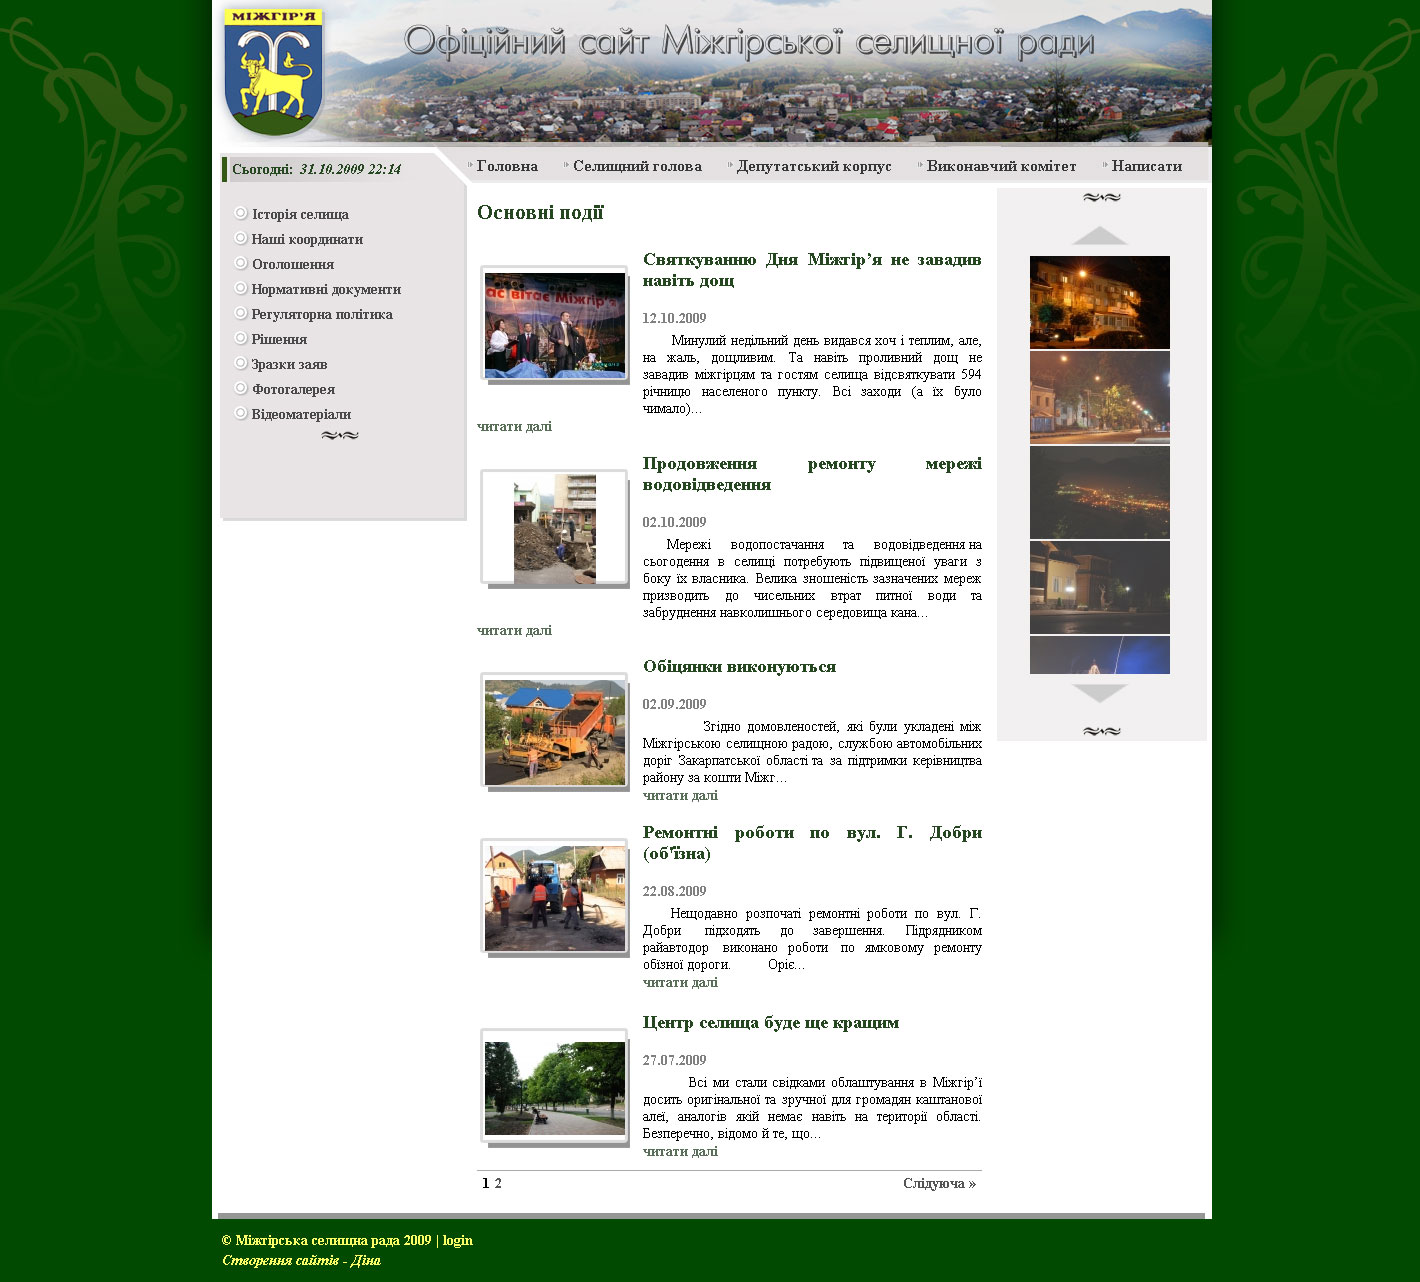 Официальный сайт, созданный для Межгорского сельского совета